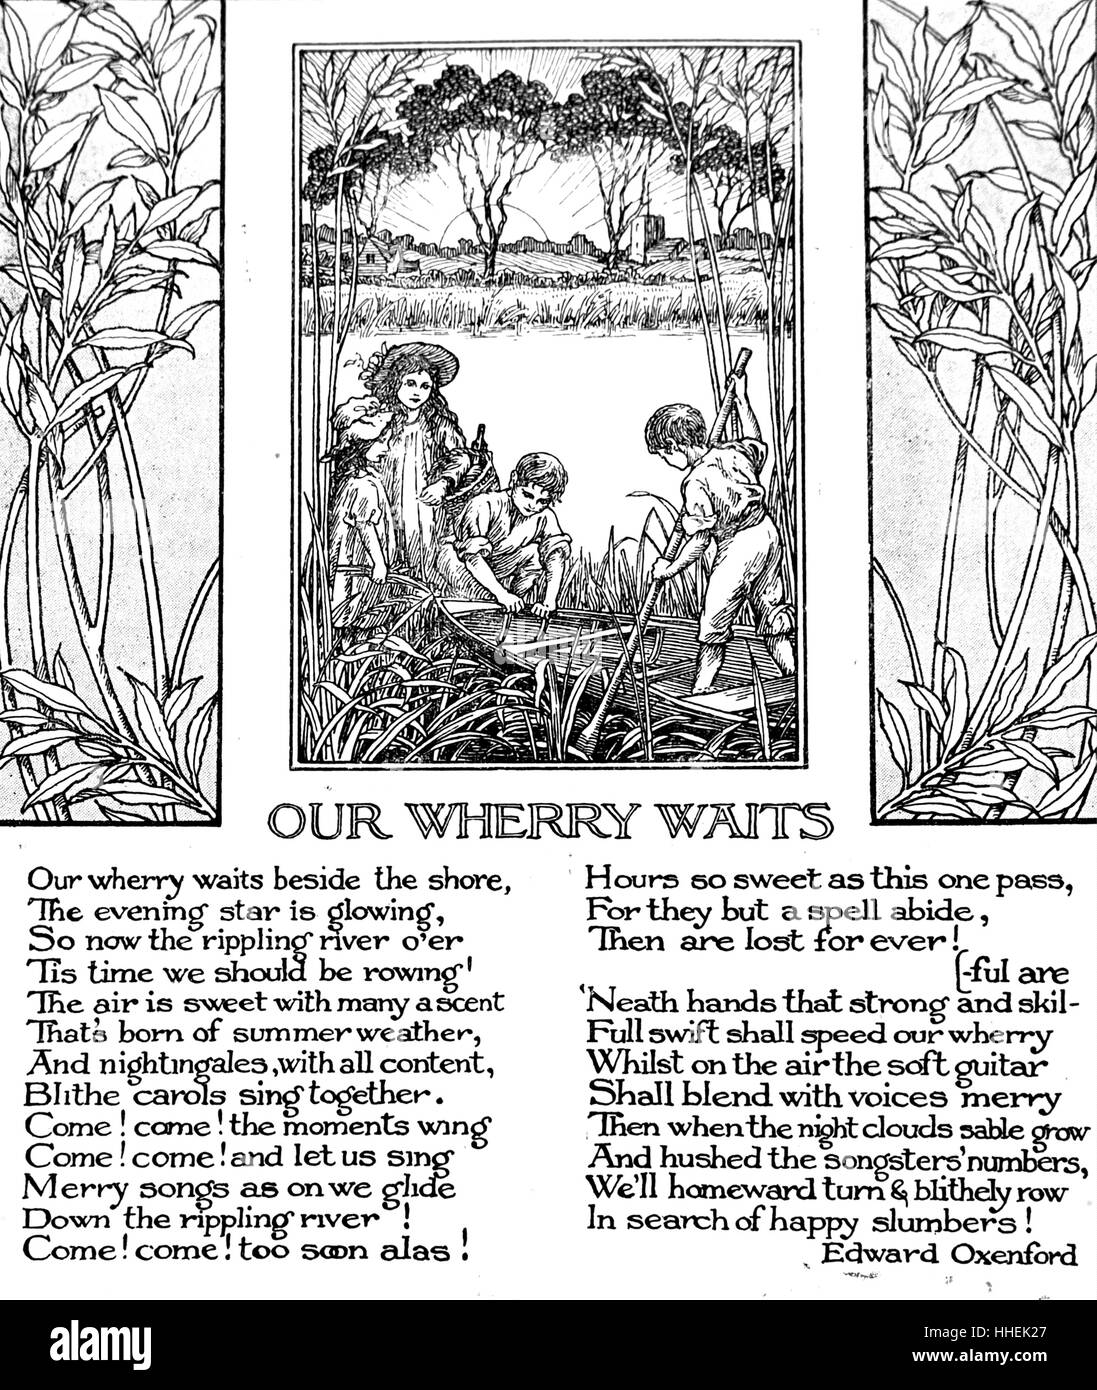 Gedicht mit dem Titel "Our Wherry wartet" von Edward Oxenford mit Illustration von Kleinkindern spielen an einem See. Vom 20. Jahrhundert Stockfoto